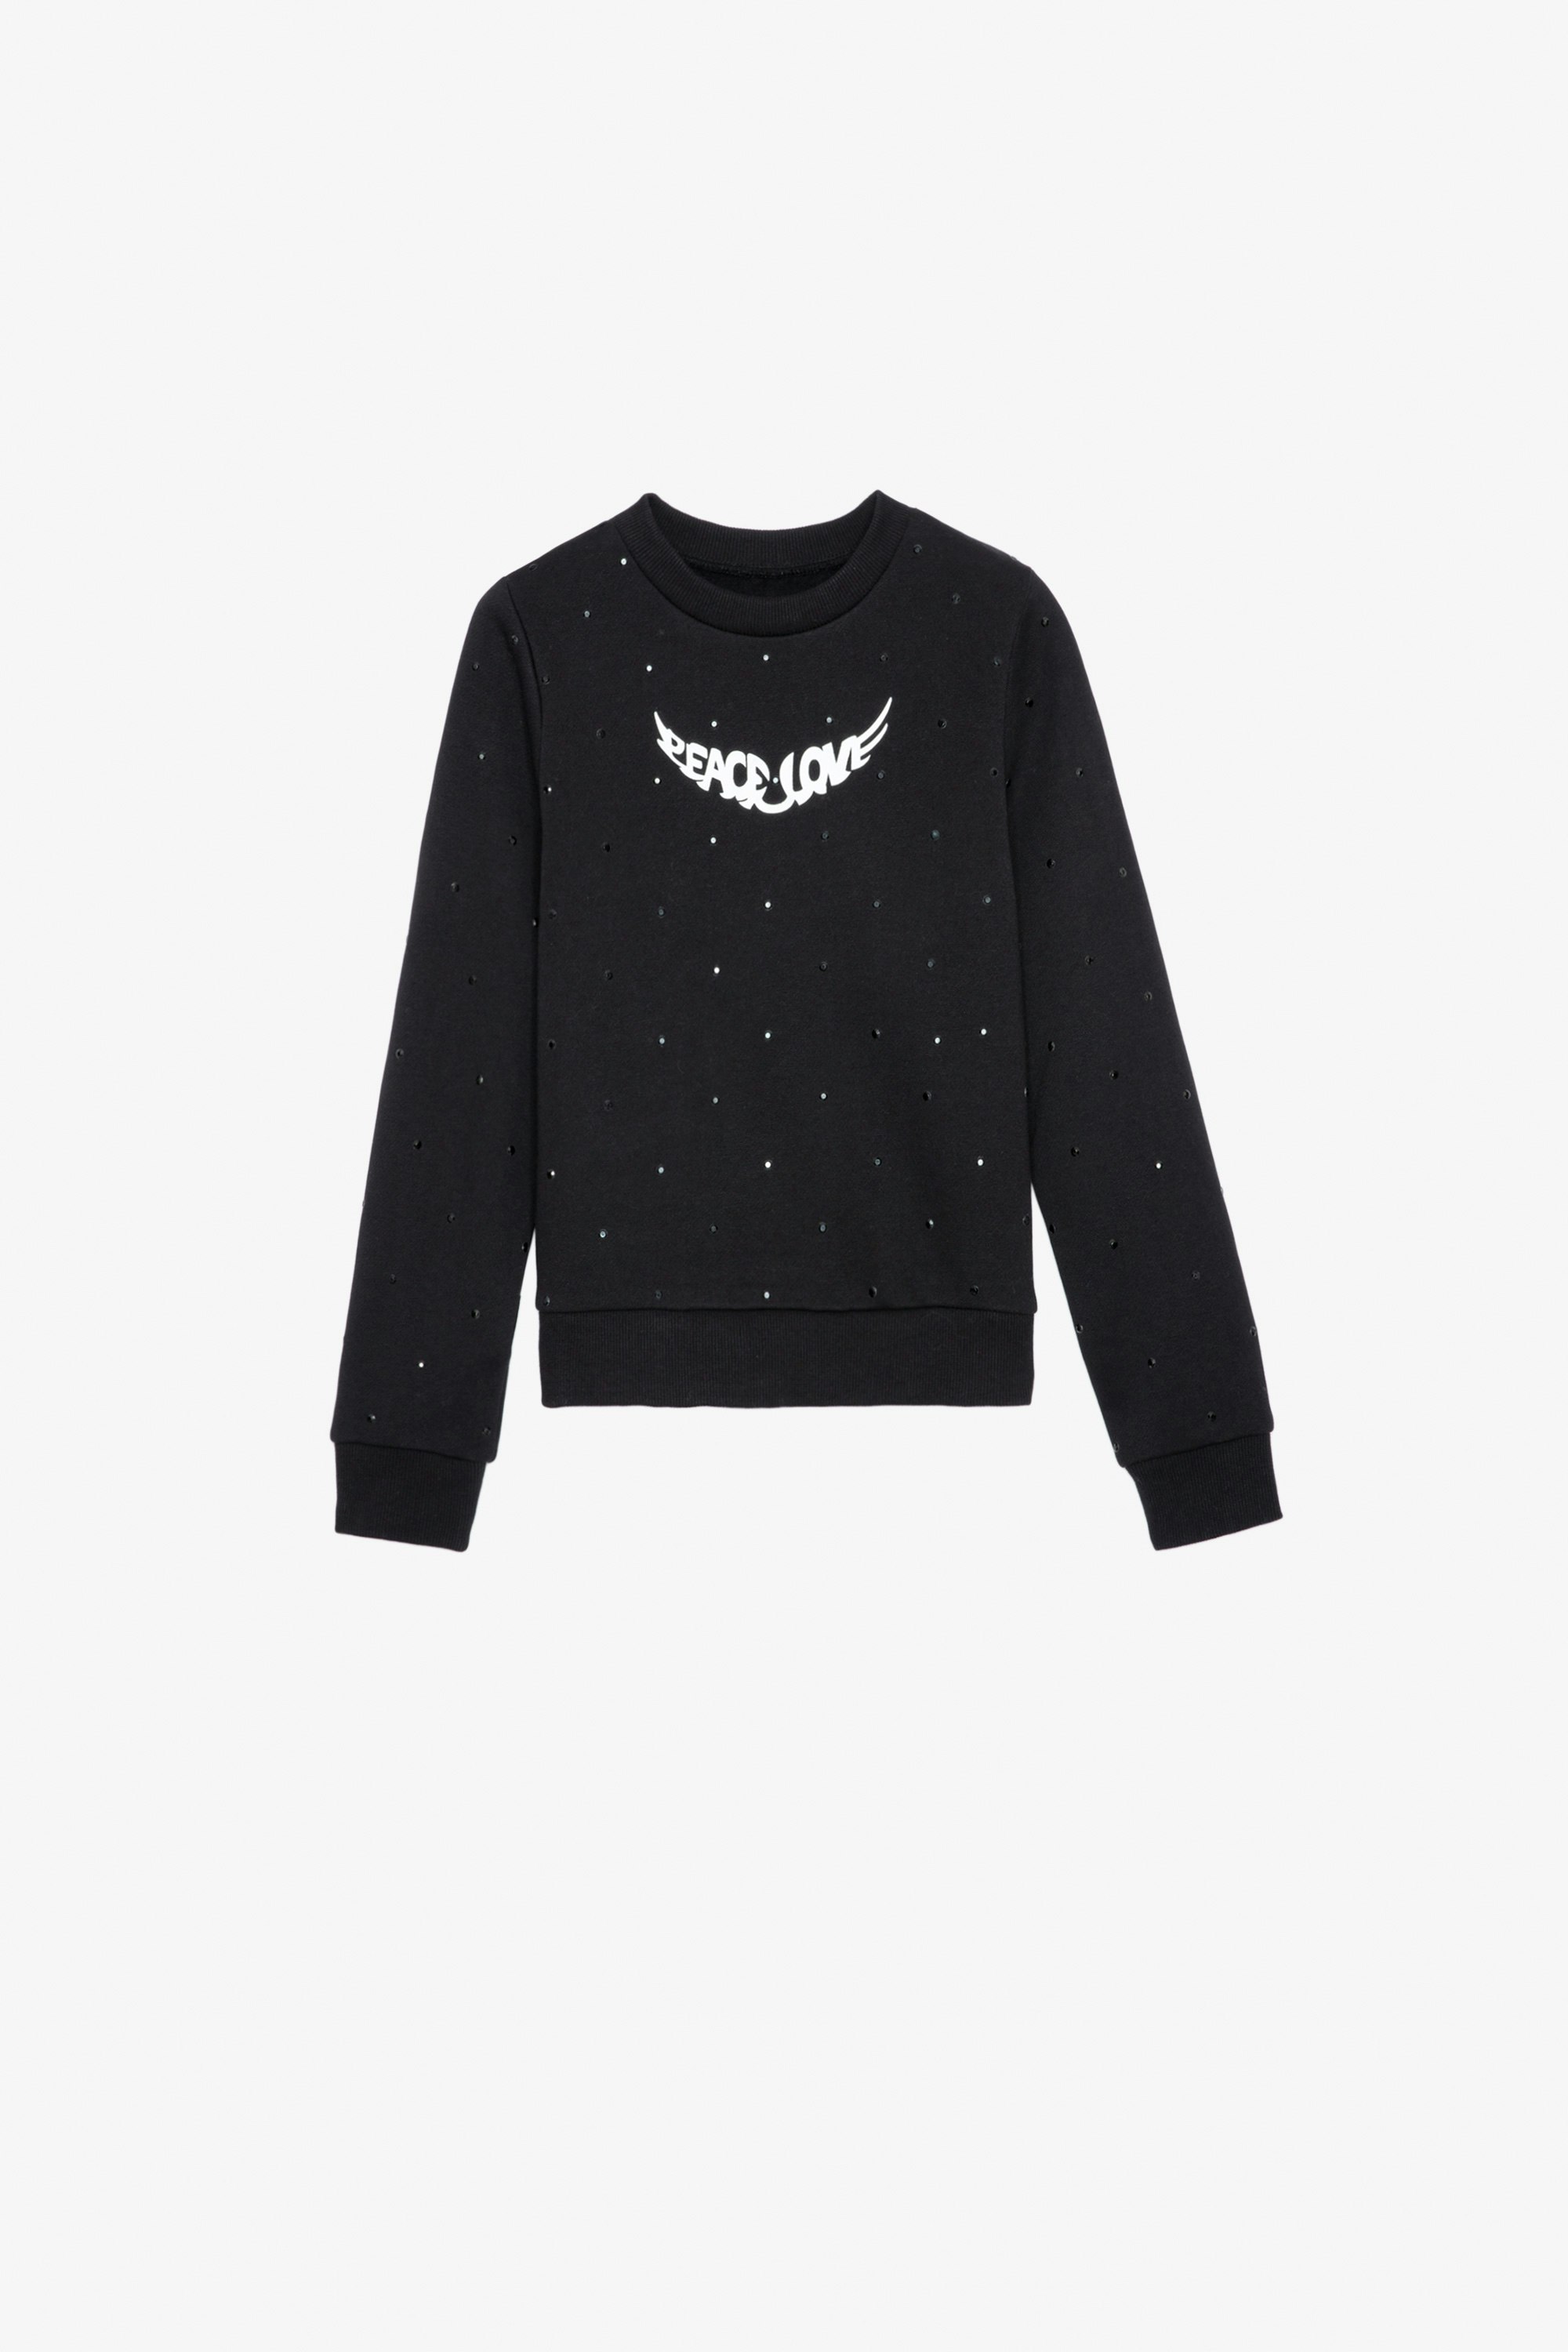 Upper Girls’ Sweatshirt - Girls’ black cotton fleece sweatshirt with diamanté and wings motif.